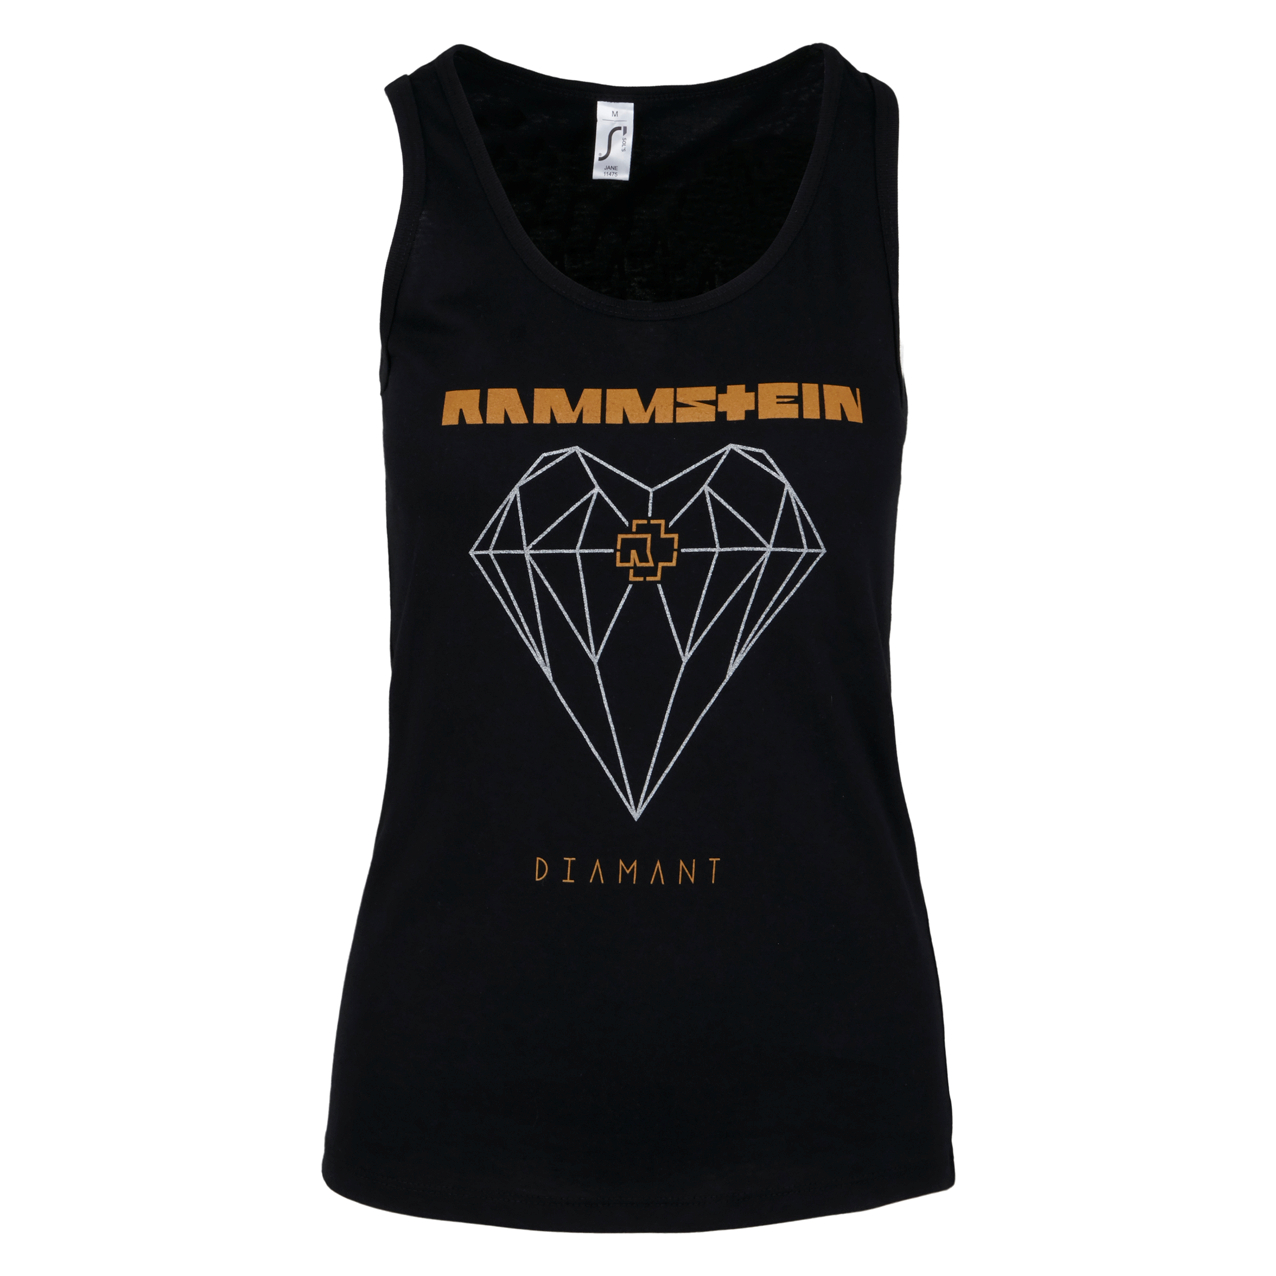 Rammstein Fanartikel, Band Merchandise Shop